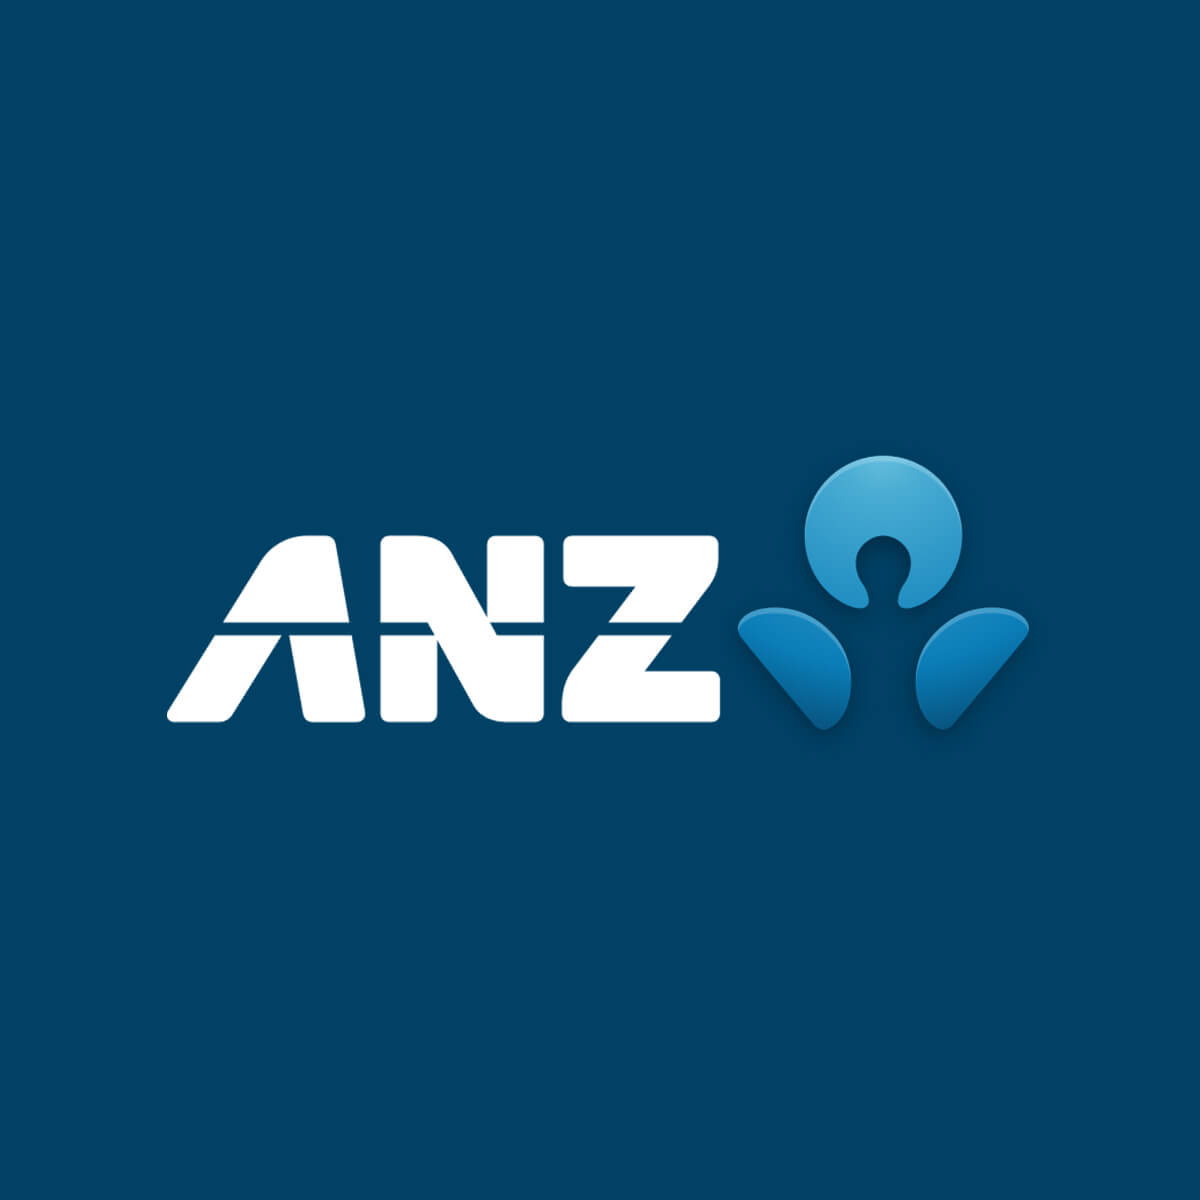 anz-logo-og-1200×1200